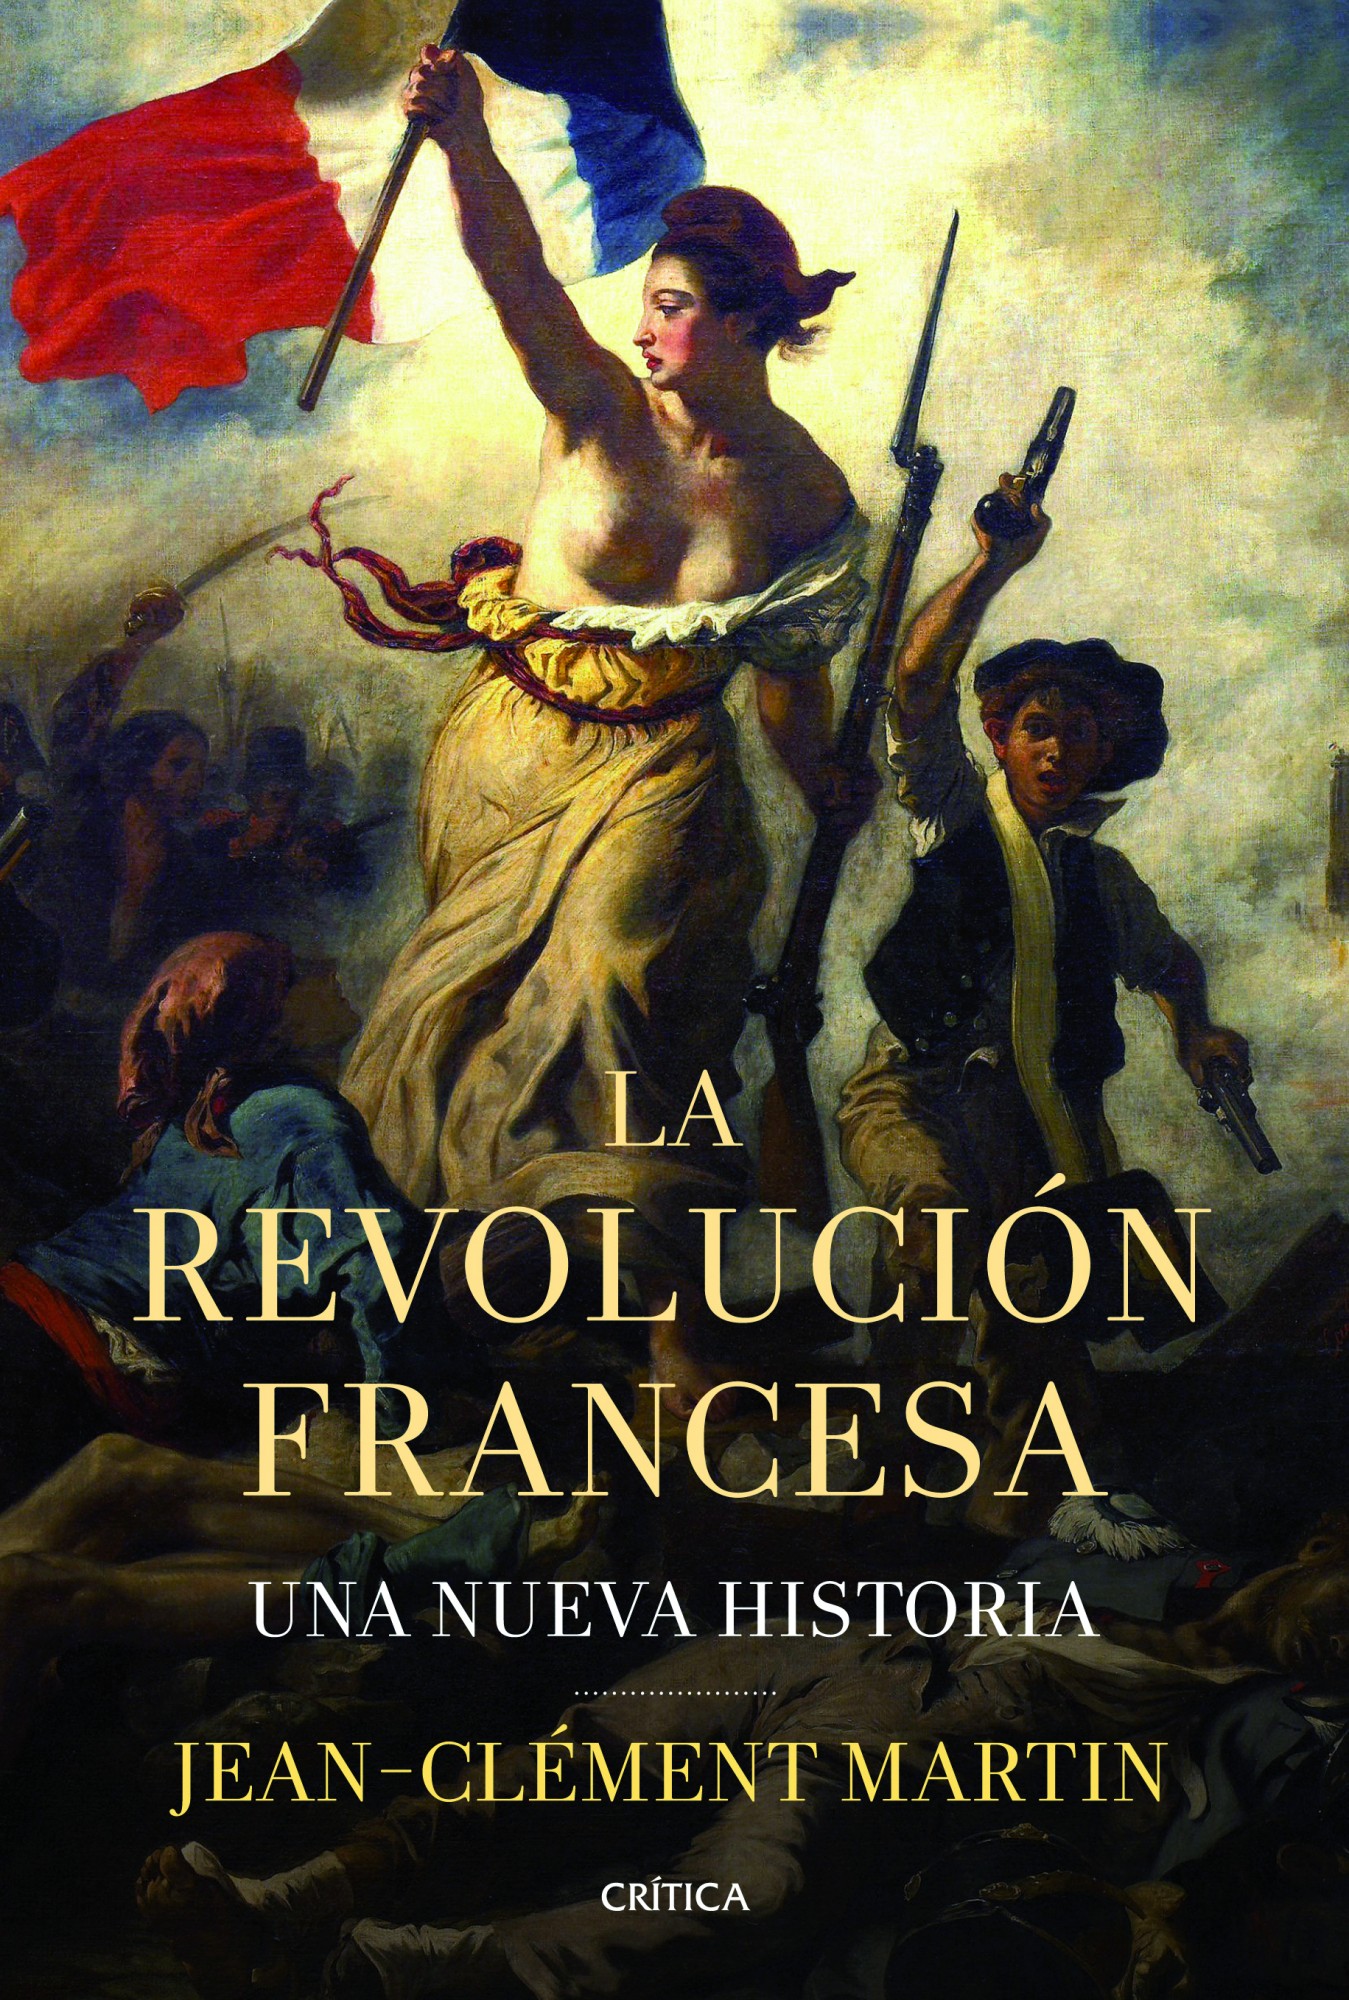 Nominal Marco de referencia retroceder La revolución francesa | Katakrak - Librería, Cafetería, Editorial,  cooperativa